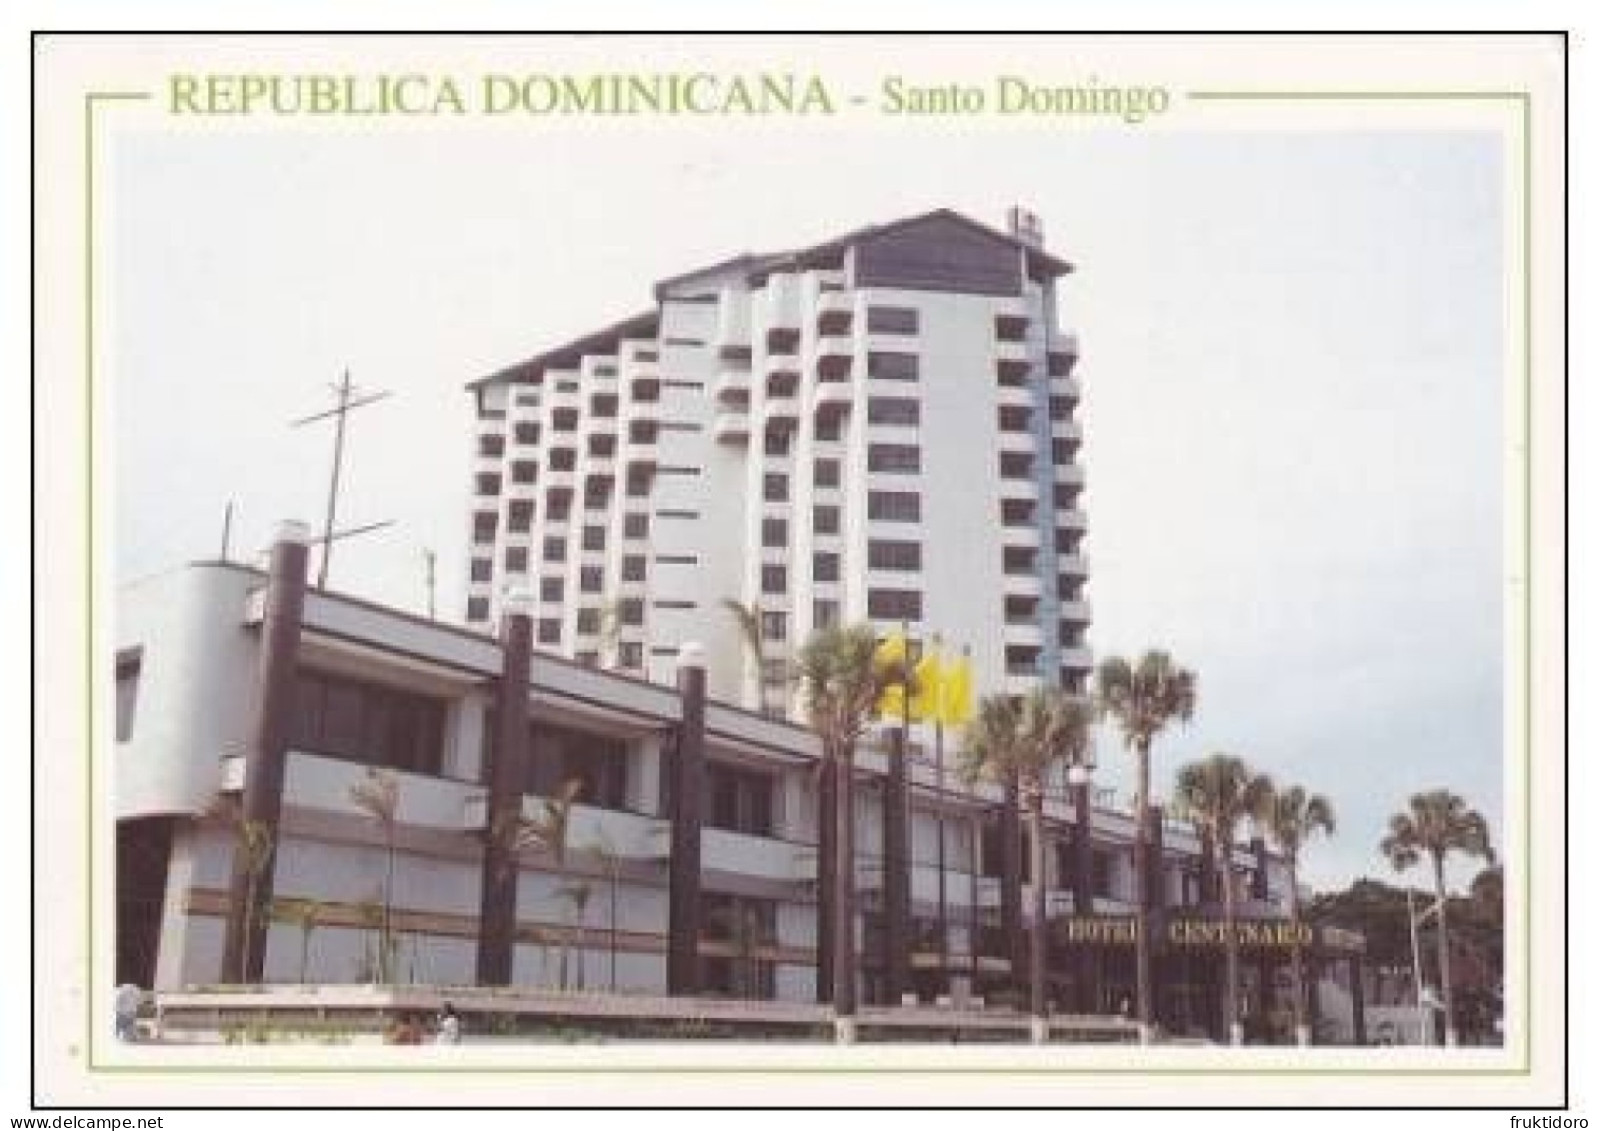 AKDO Dominican Republic Postcards Carnival La Vega - Dorada Beach - Higuey - Los Patos - Santo Domingo - Dominican Republic